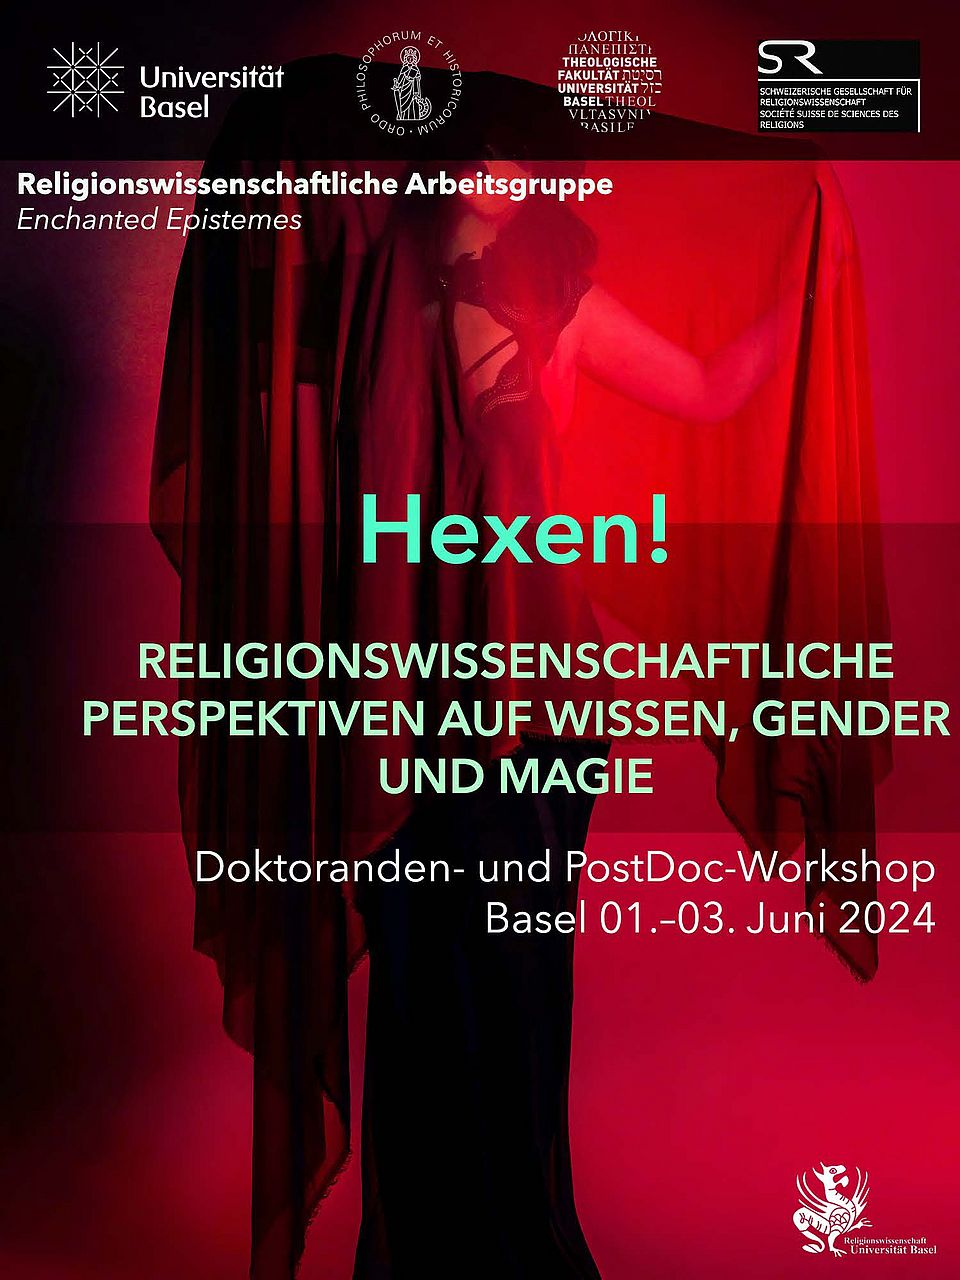 Flaer für Veranstaltung Workshop "Hexen" im Hintergrund eine weibliche Silhouette in schwarz, Flyer ist in rot gehalten